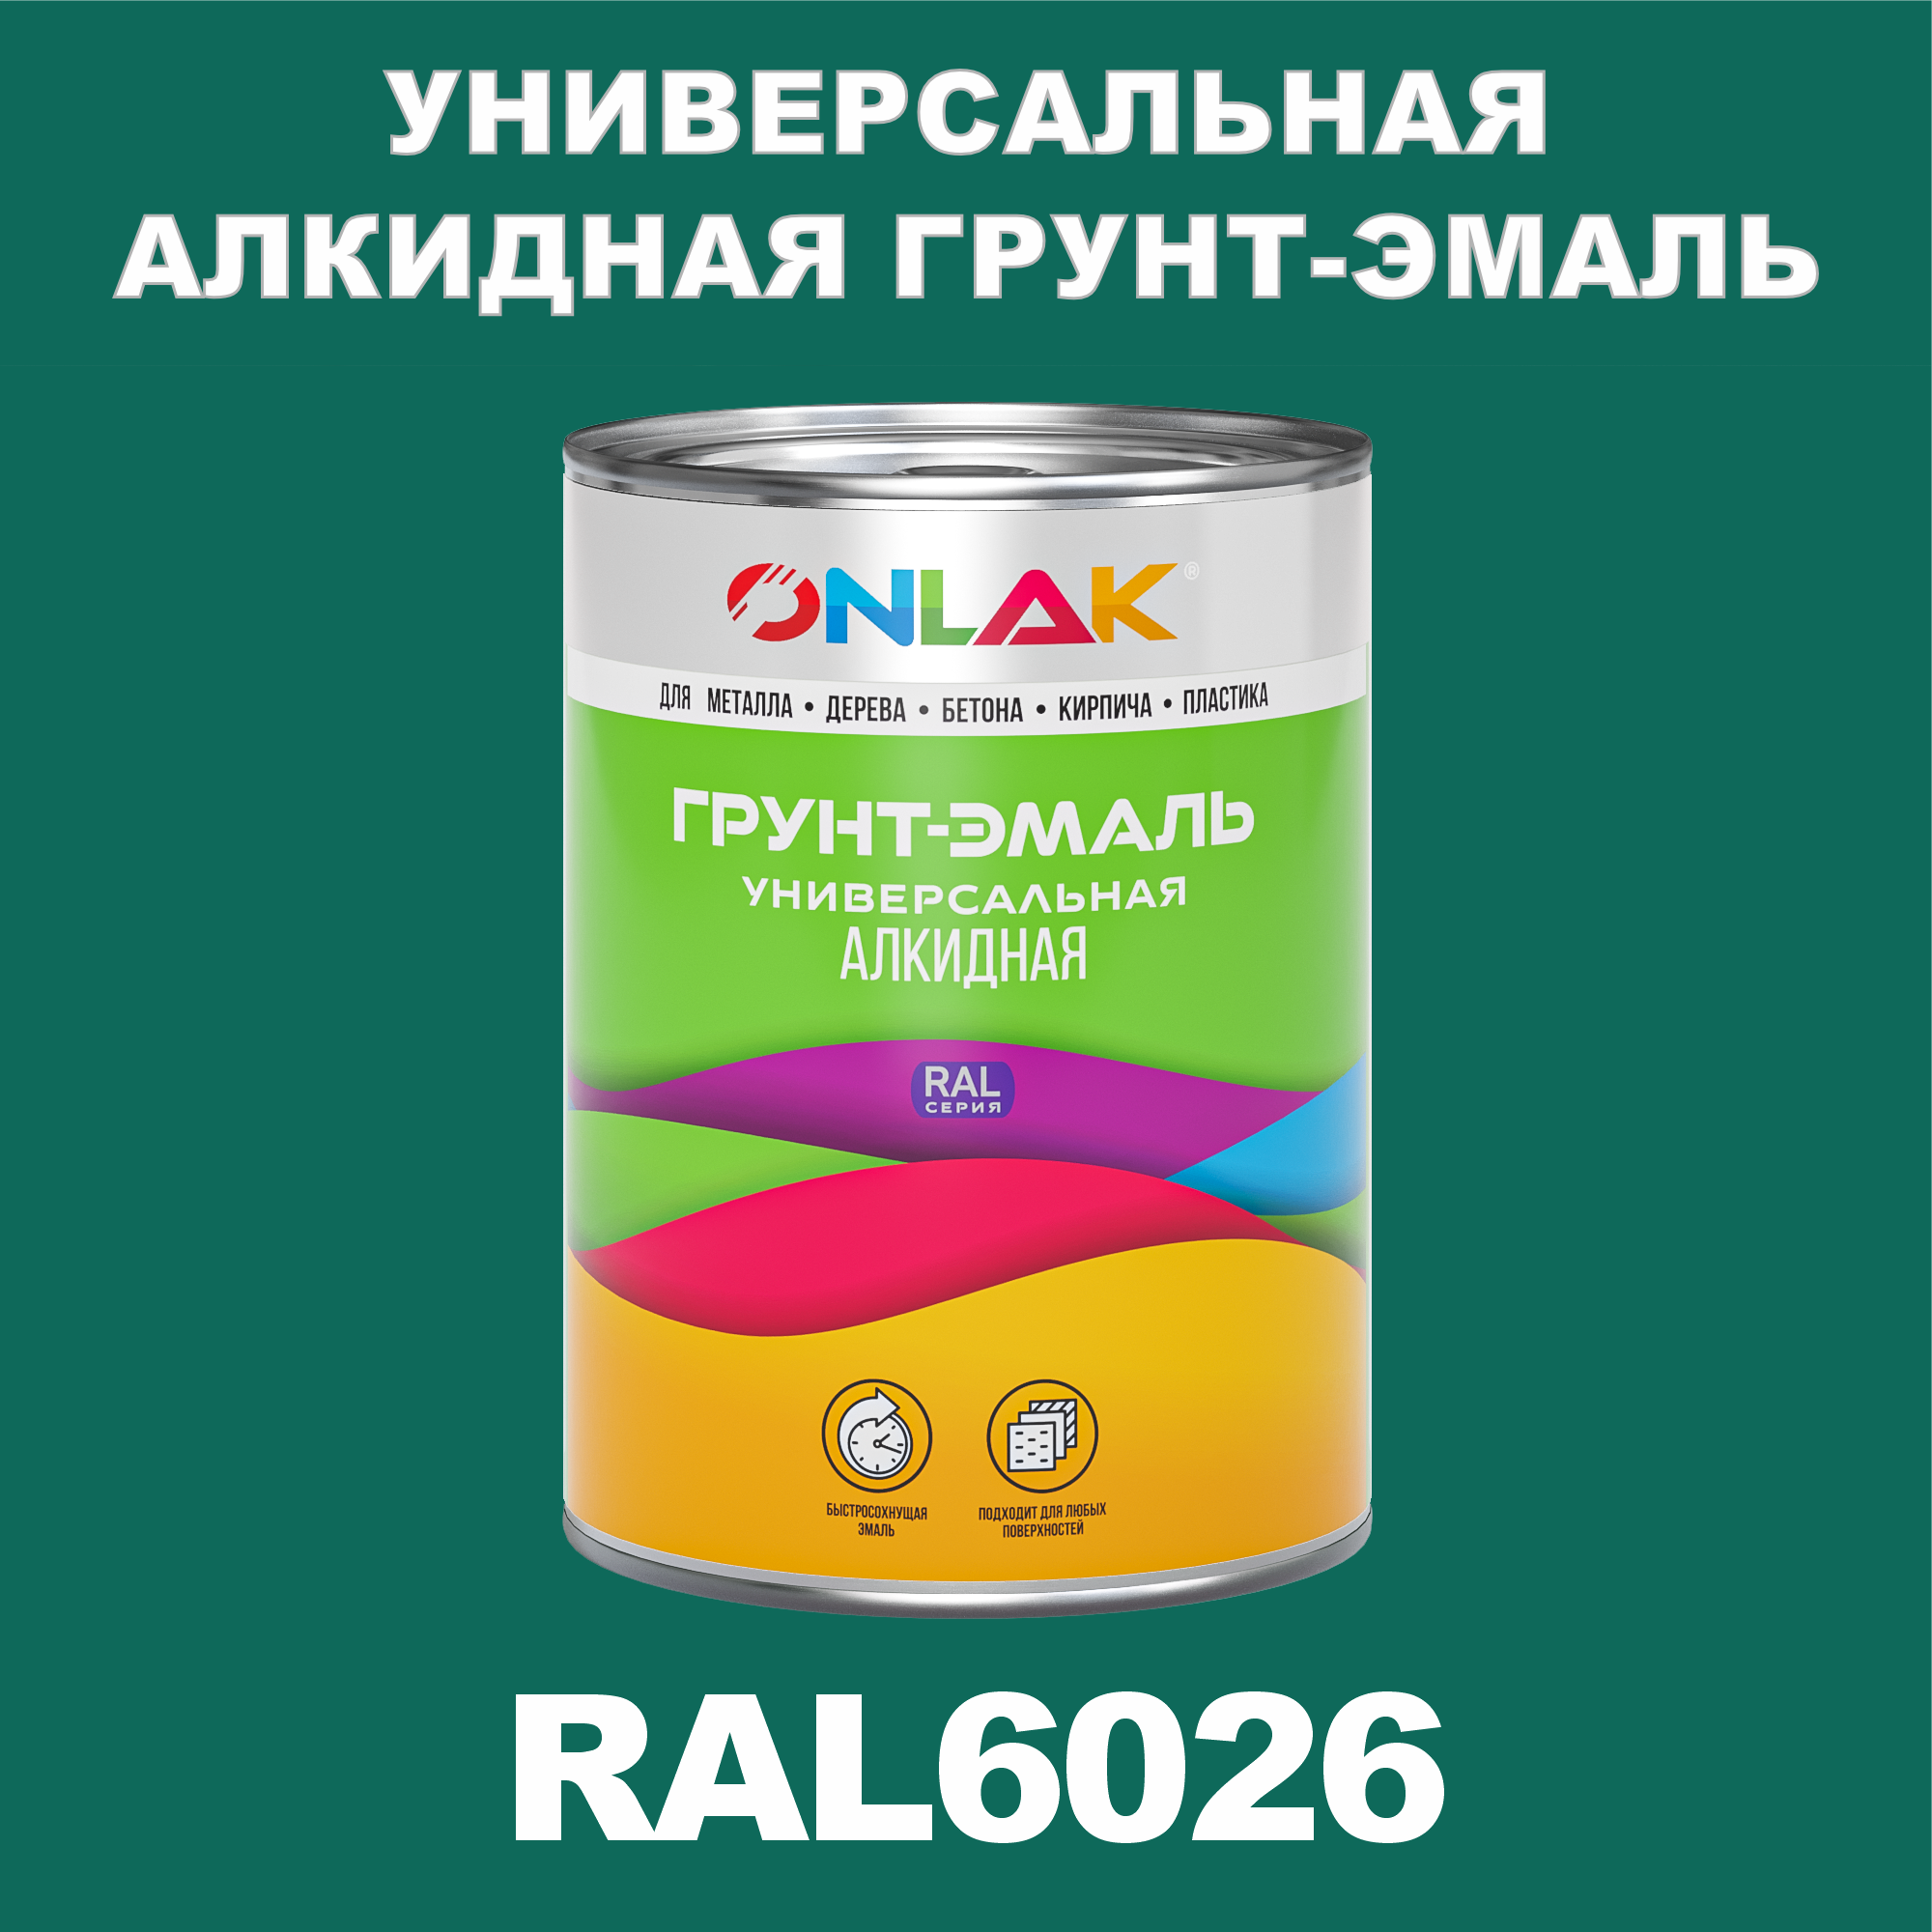 Грунт-эмаль ONLAK 1К RAL6026 антикоррозионная алкидная по металлу по ржавчине 1 кг